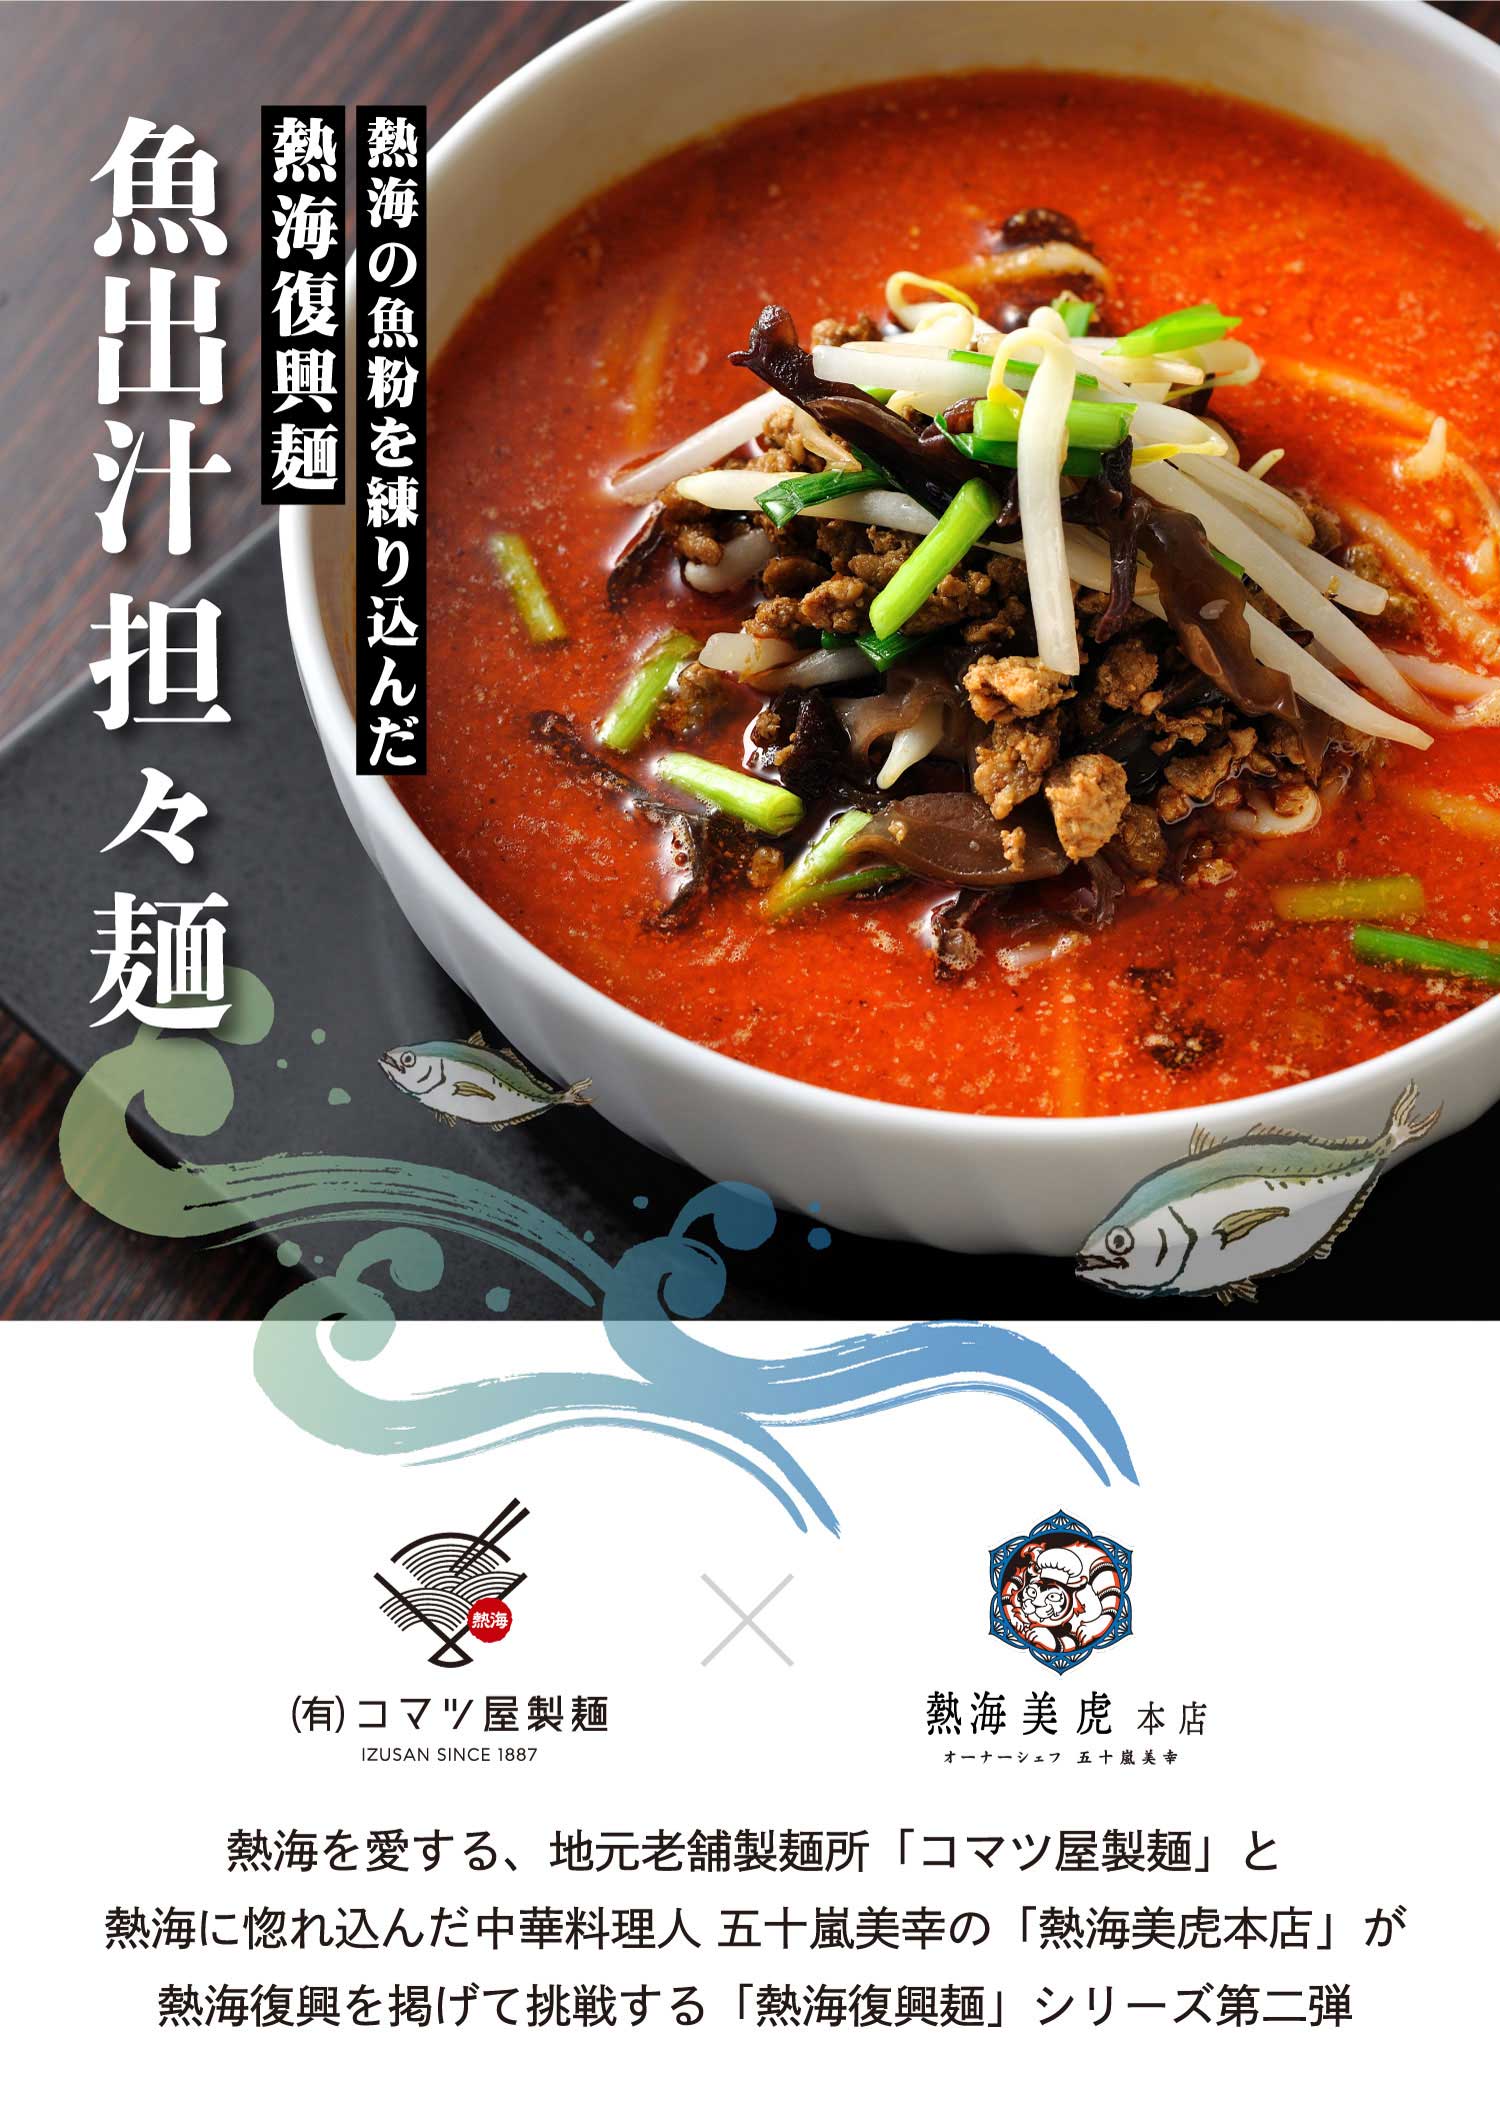 熱海復興麺-担々麺